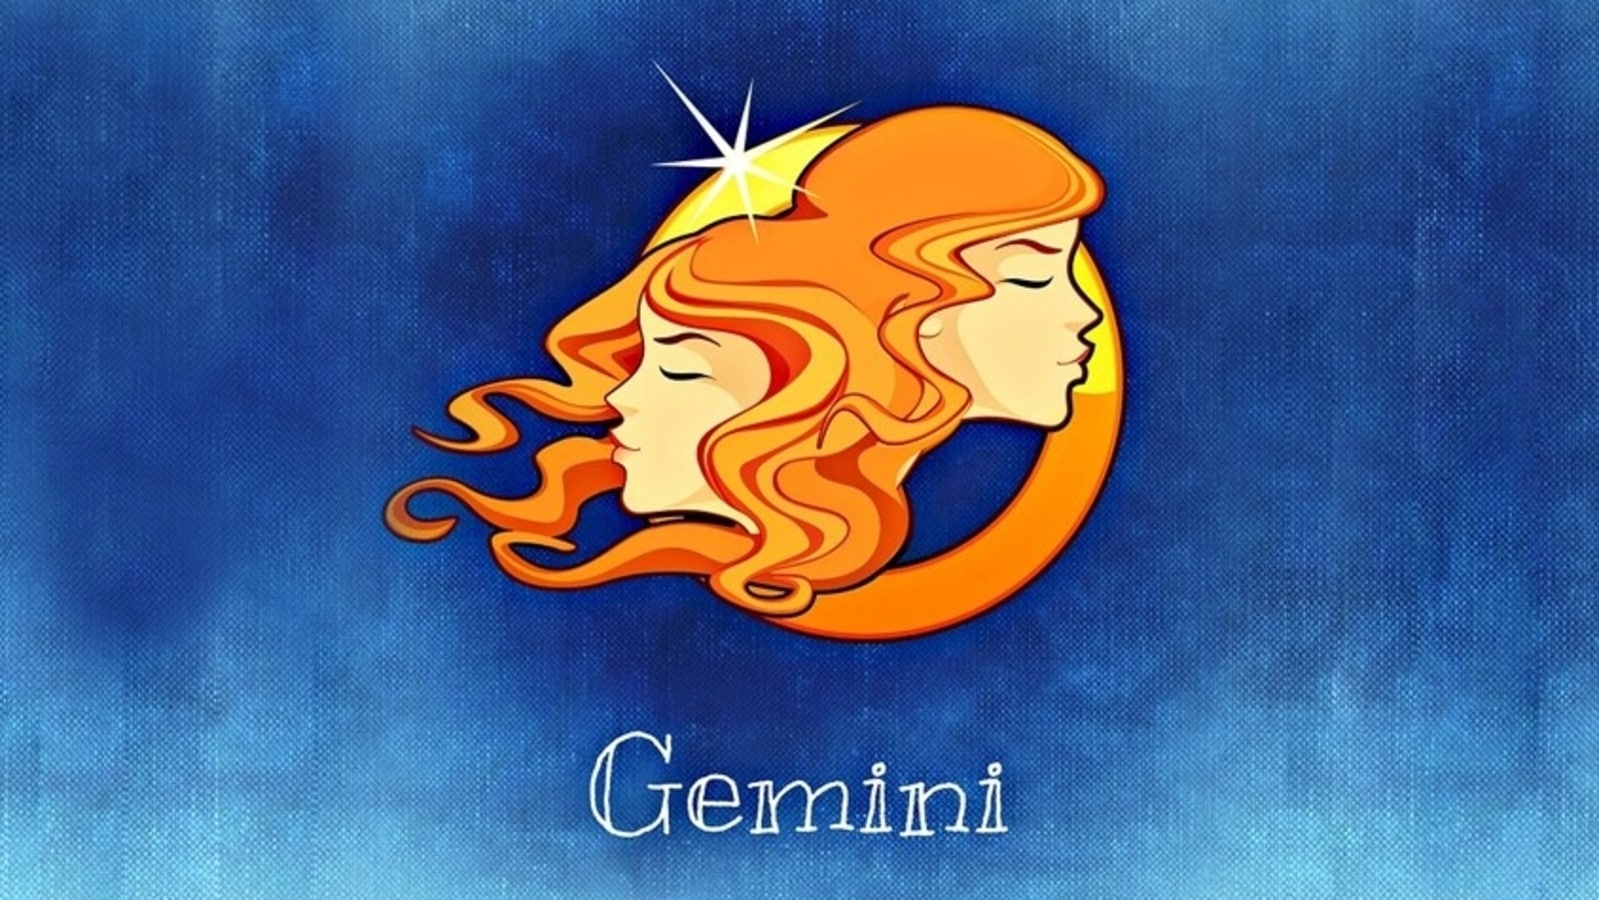 gemini daily horoscope june 19th 2016